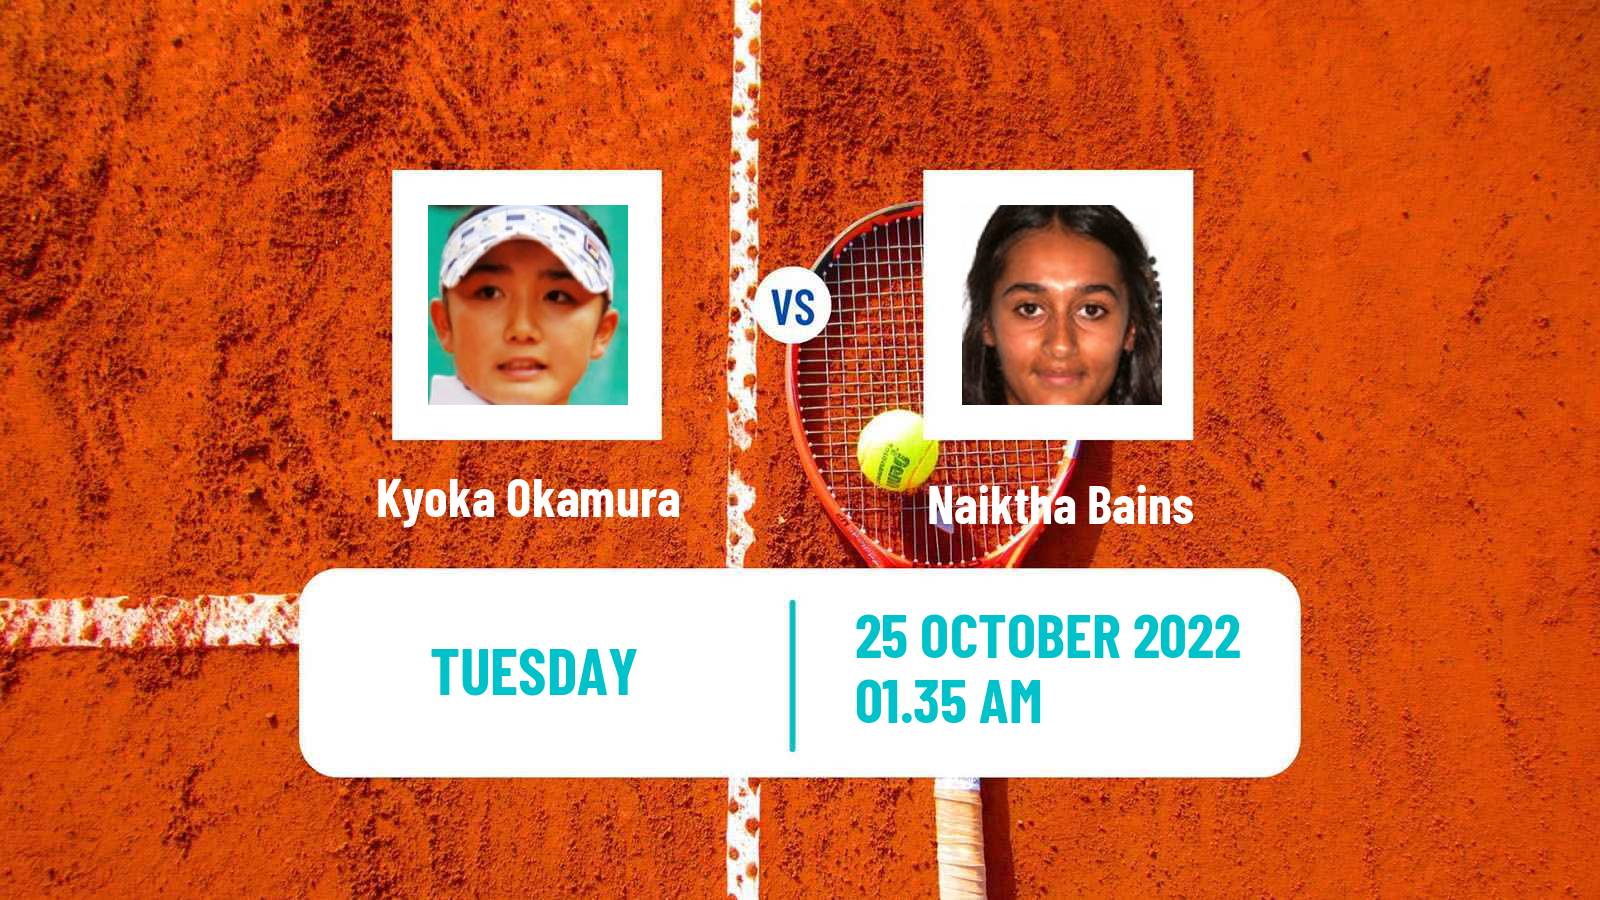 Tennis ITF Tournaments Kyoka Okamura - Naiktha Bains